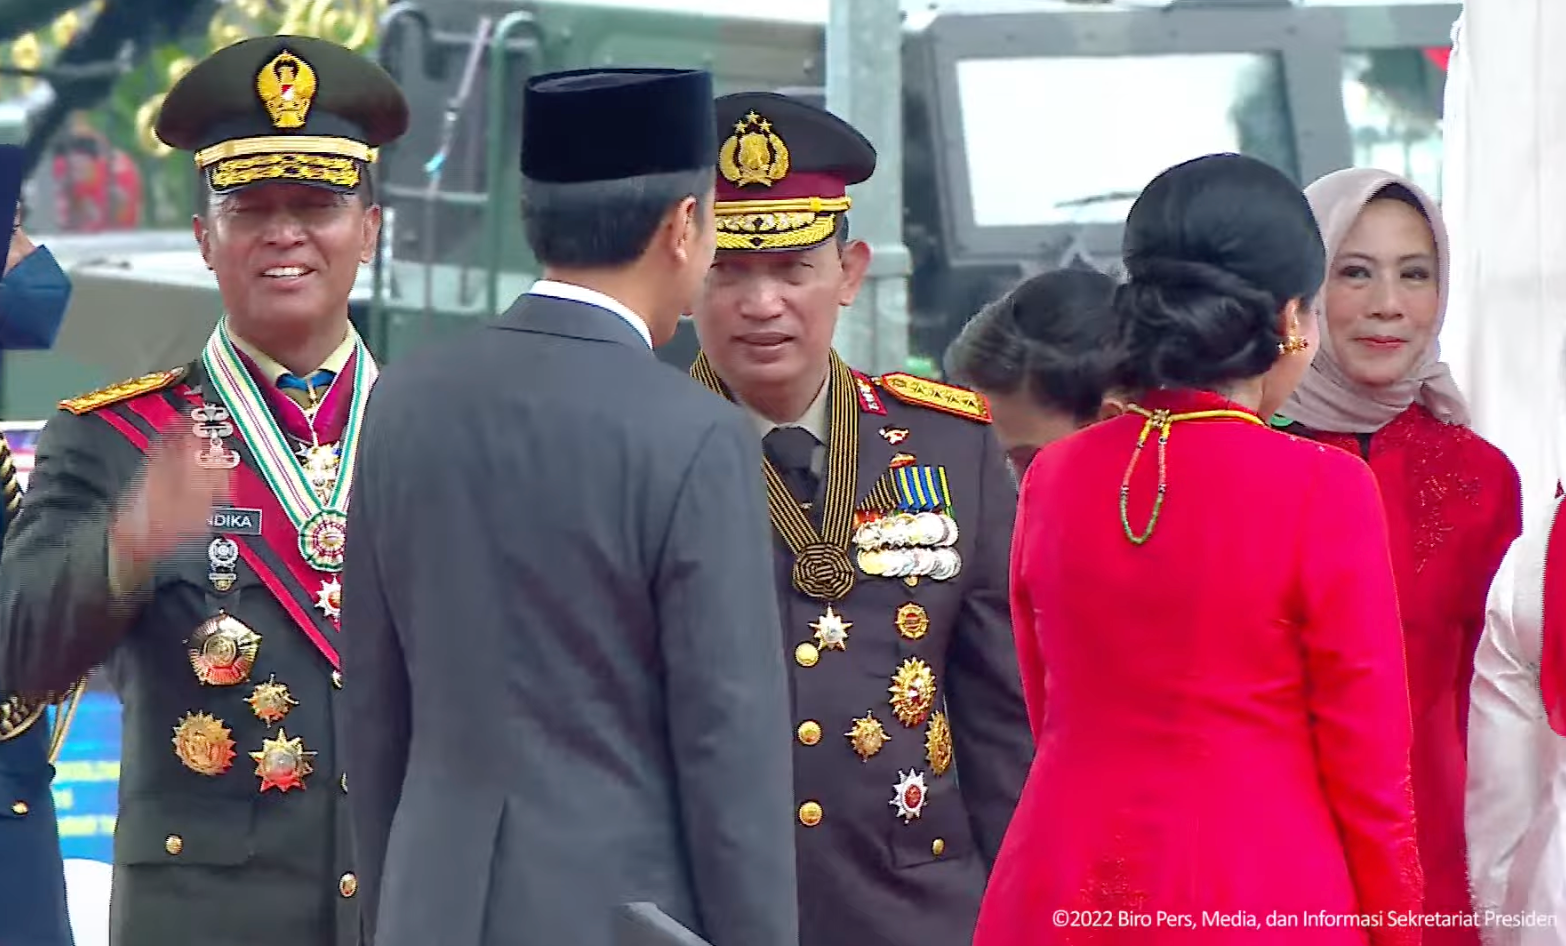 Video Jokowi Tak Salami Kapolri Viral, Begini Faktanya